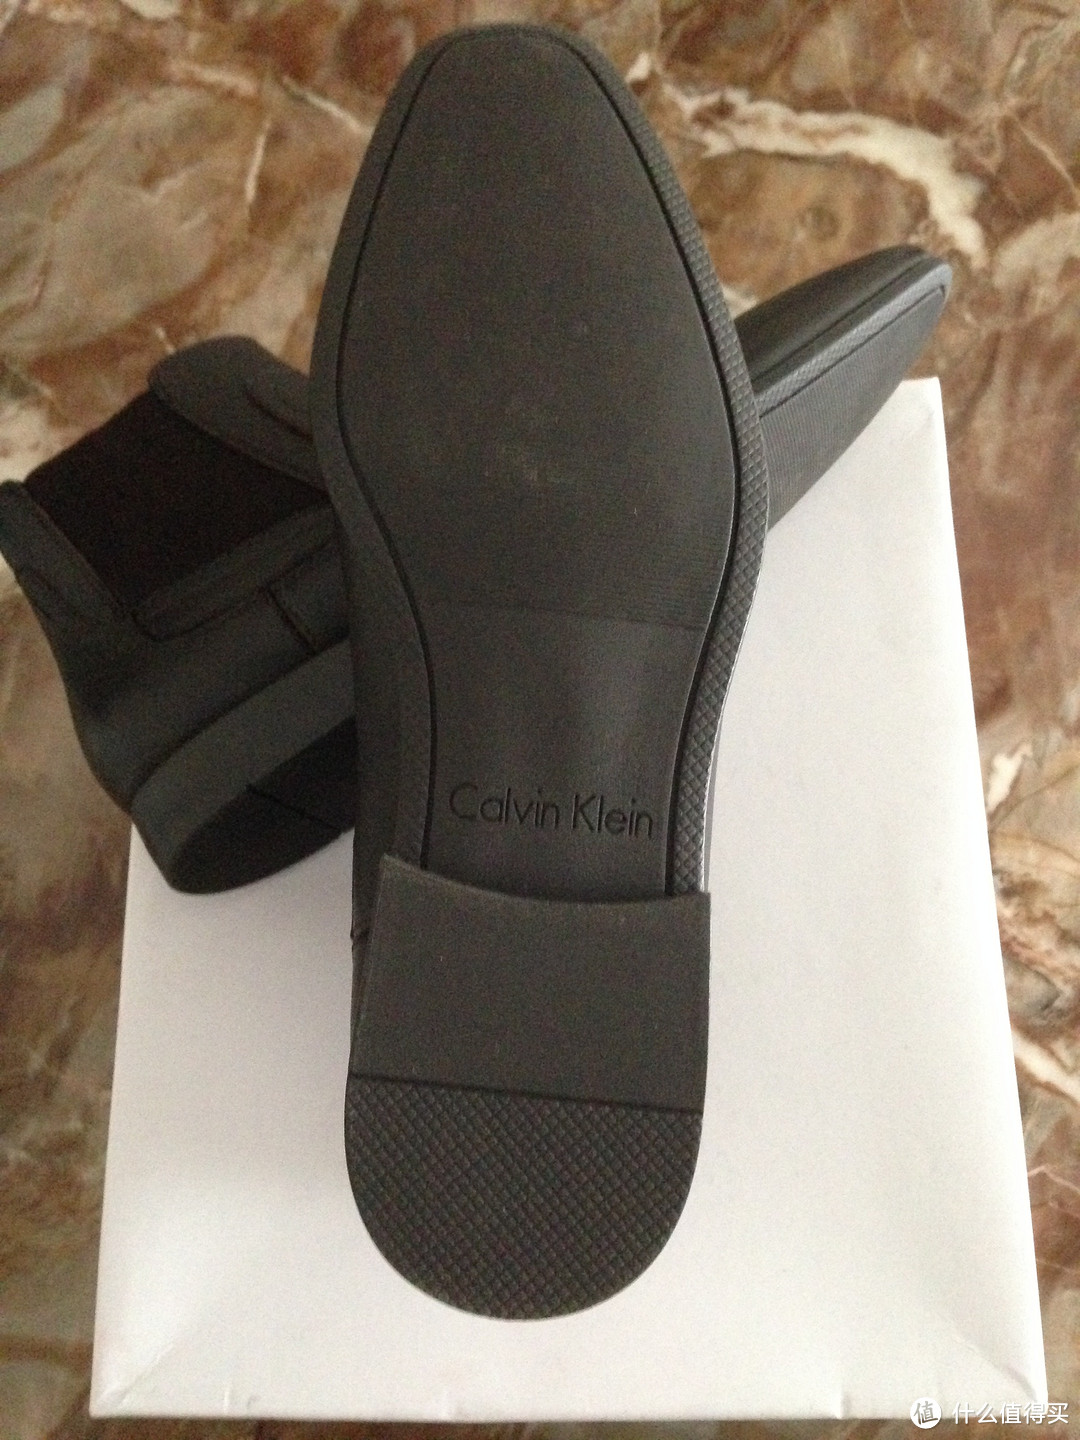 #原创新人#Calvin Klein Clarke 男士短靴 开箱晒物